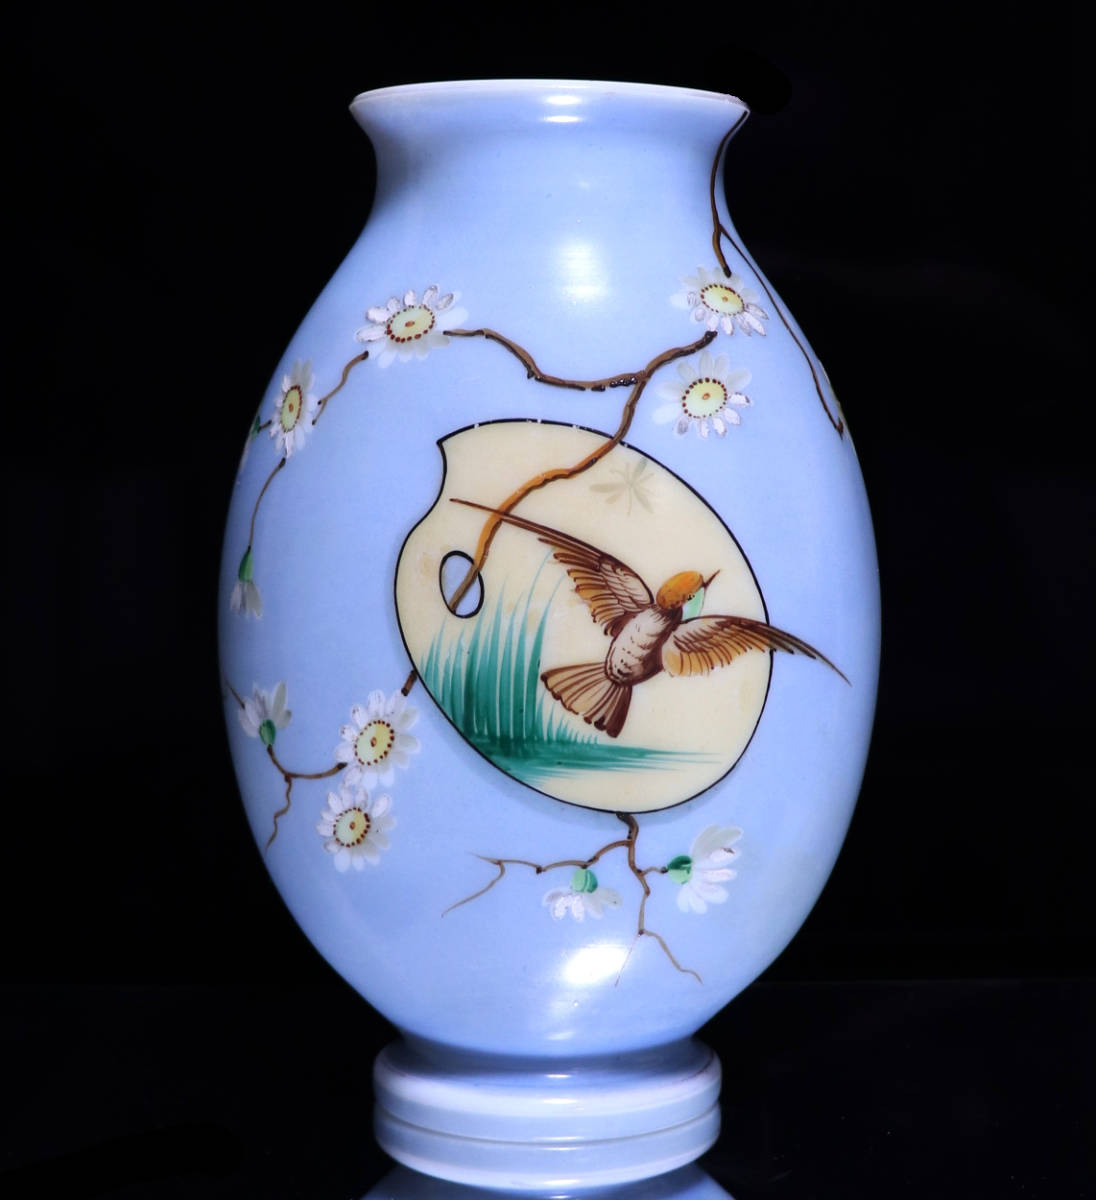 高品質の人気 オールド・バカラ セーブル ジャポニスム アンティーク 壺 ライトブルー 大型花瓶 オパーリンクリスタル製 レアカラー 日本趣味 (BACCARAT) バカラ